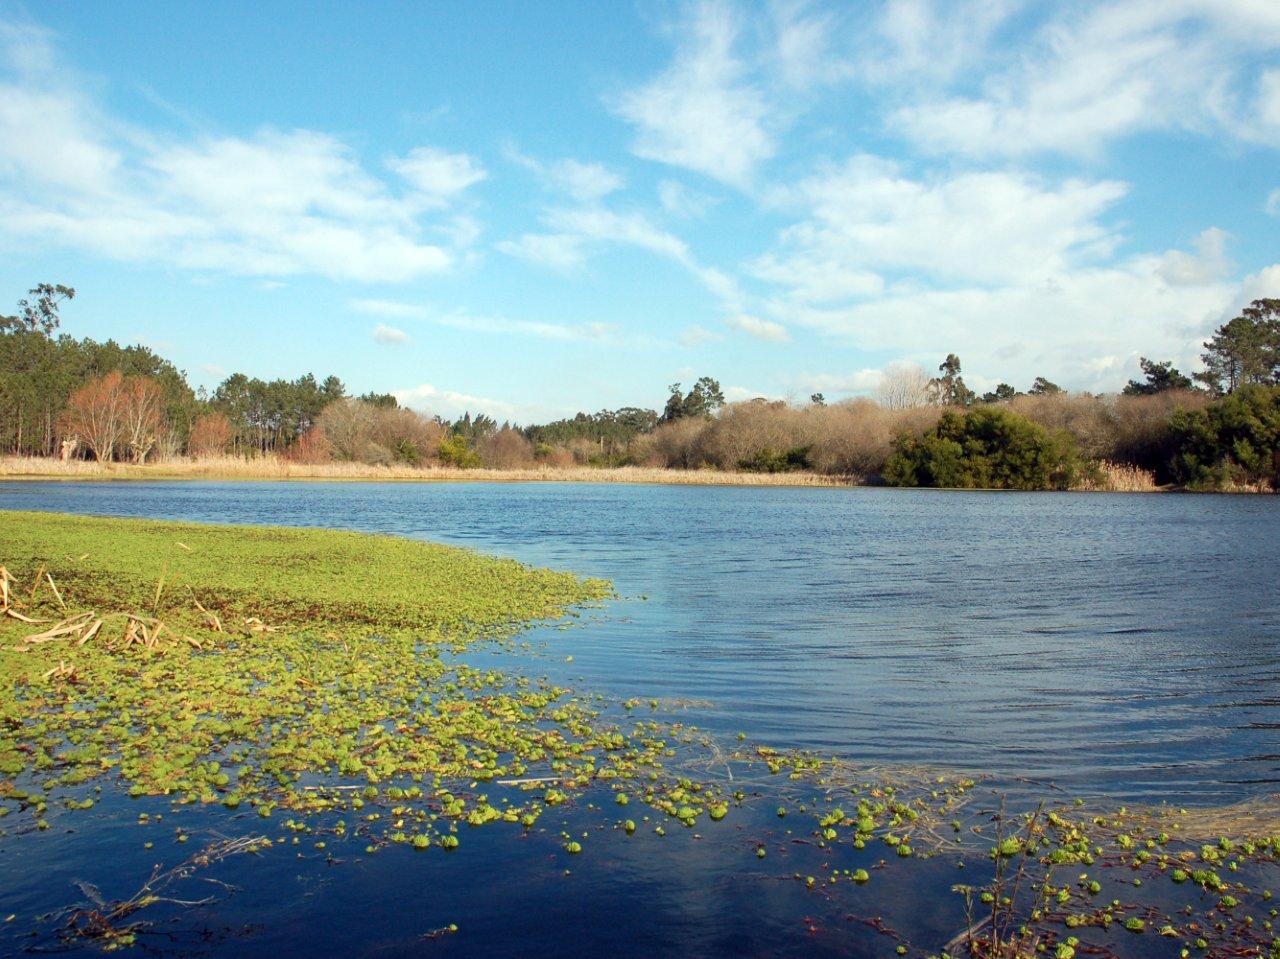 Teixoeiros or Mata Lagoon